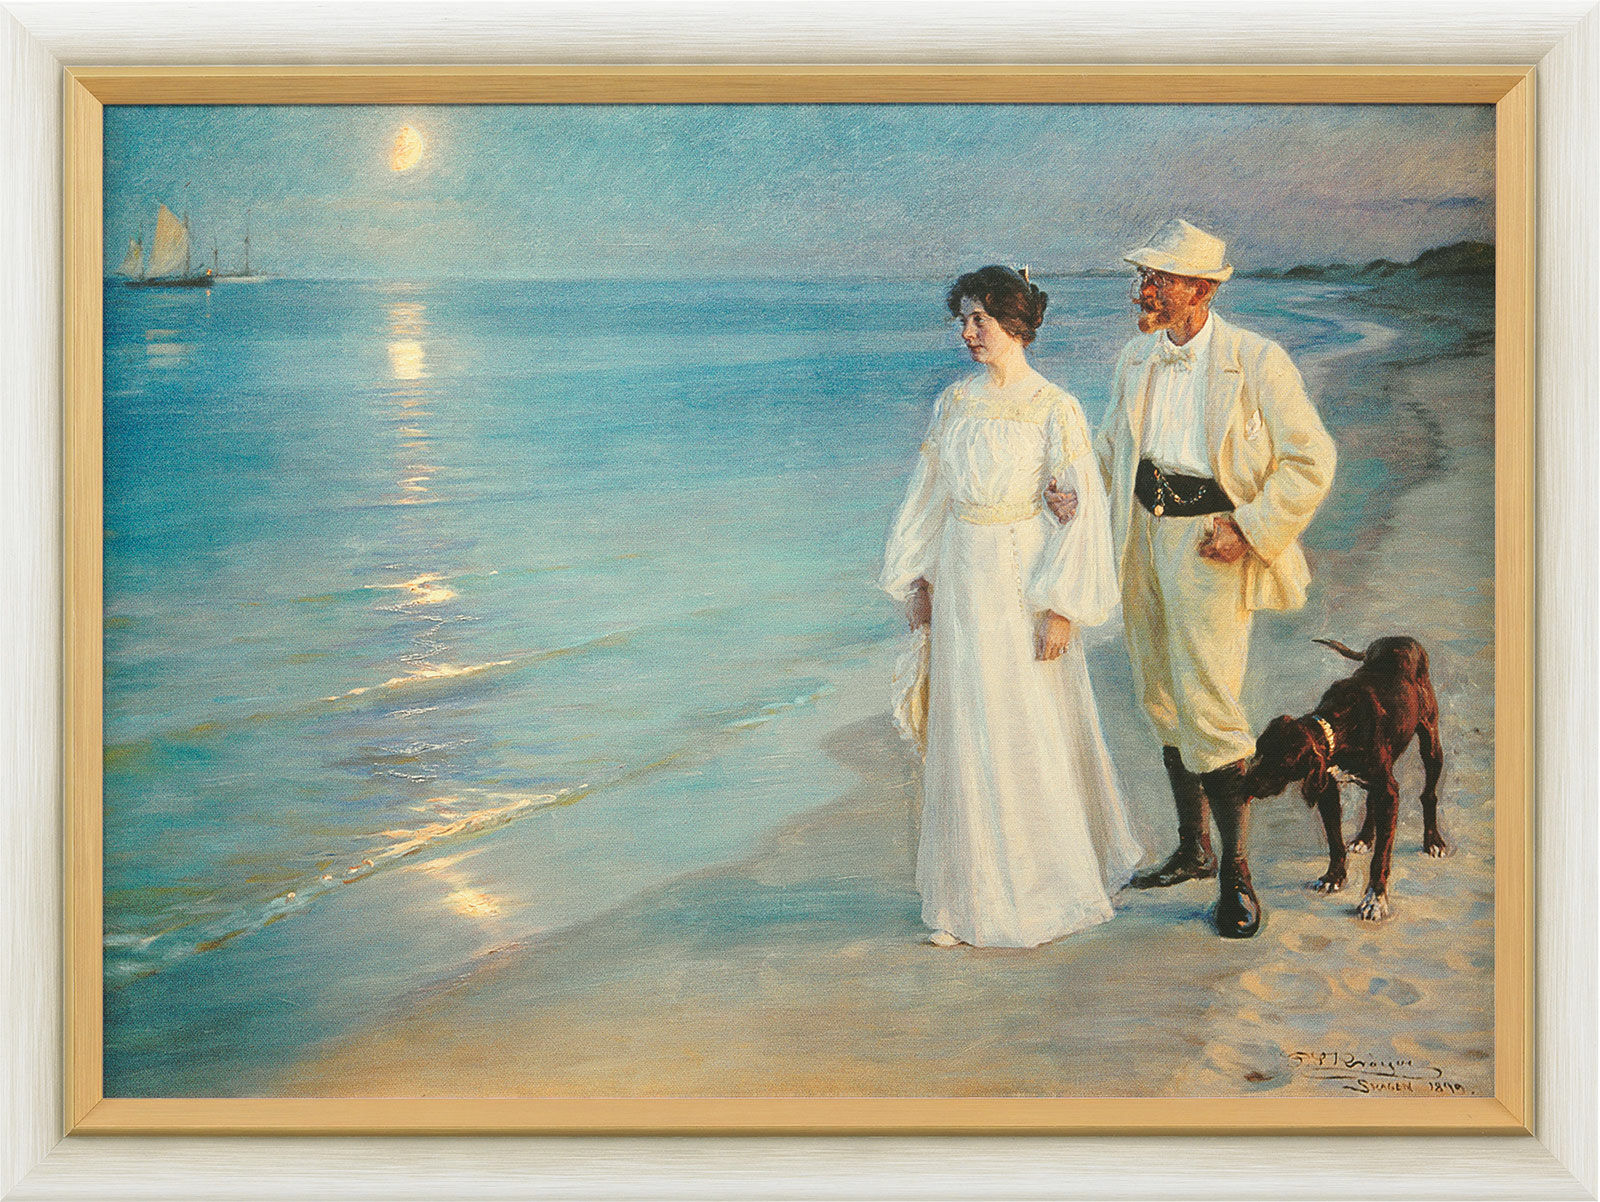 Beeld "Zomeravond aan het strand van Skagen - De kunstenaar en zijn vrouw" (1899), ingelijst von Peder Severin Kroyer